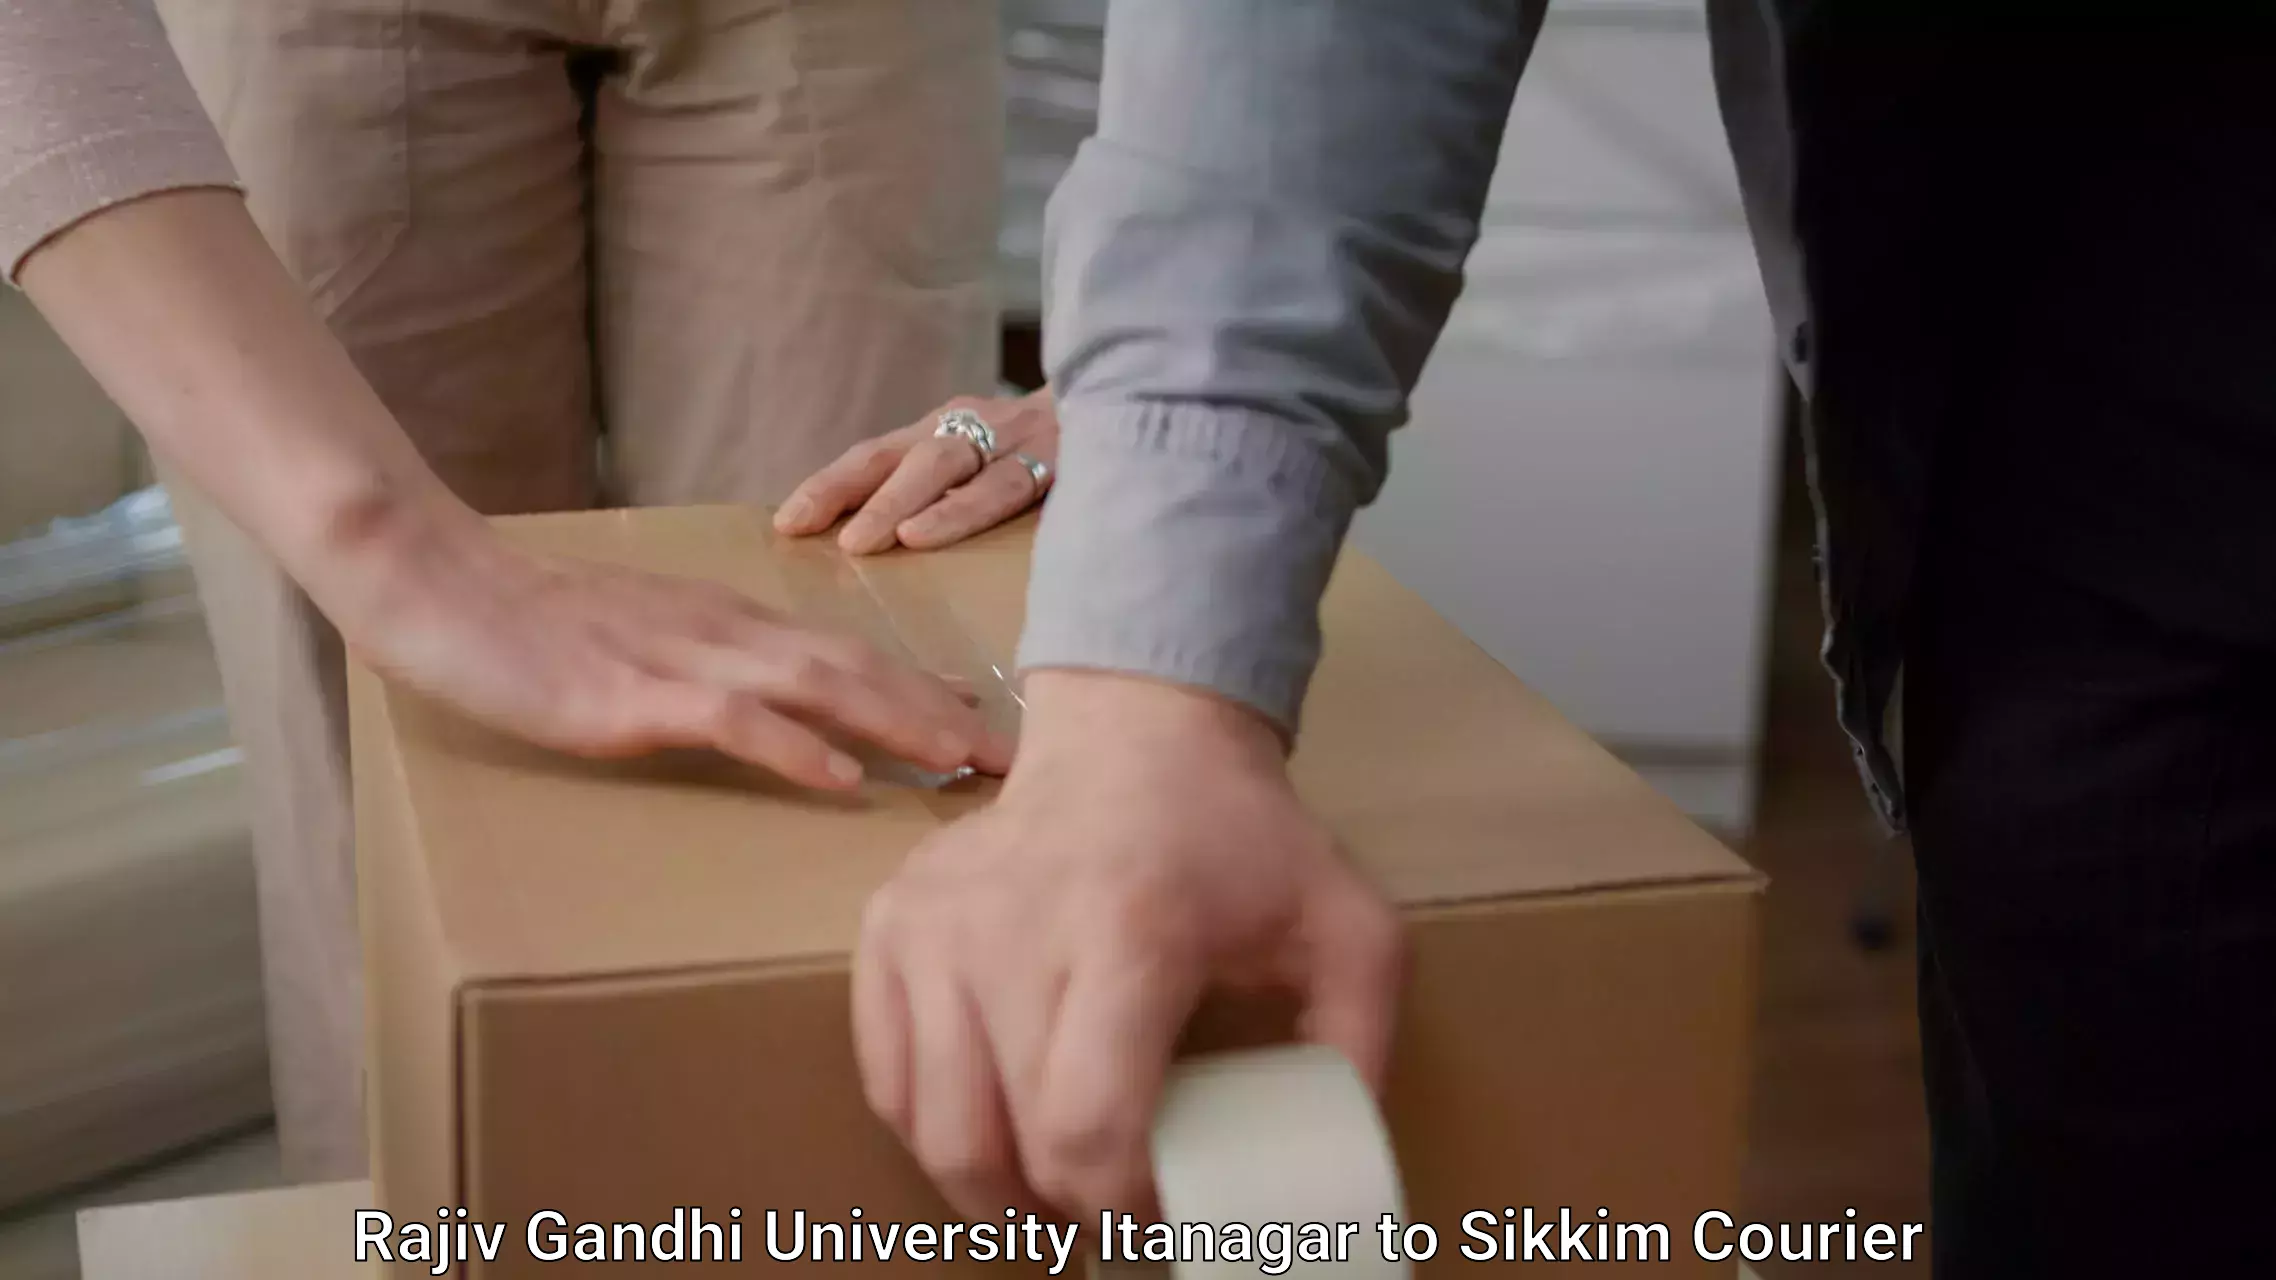 Furniture transport professionals Rajiv Gandhi University Itanagar to Pelling